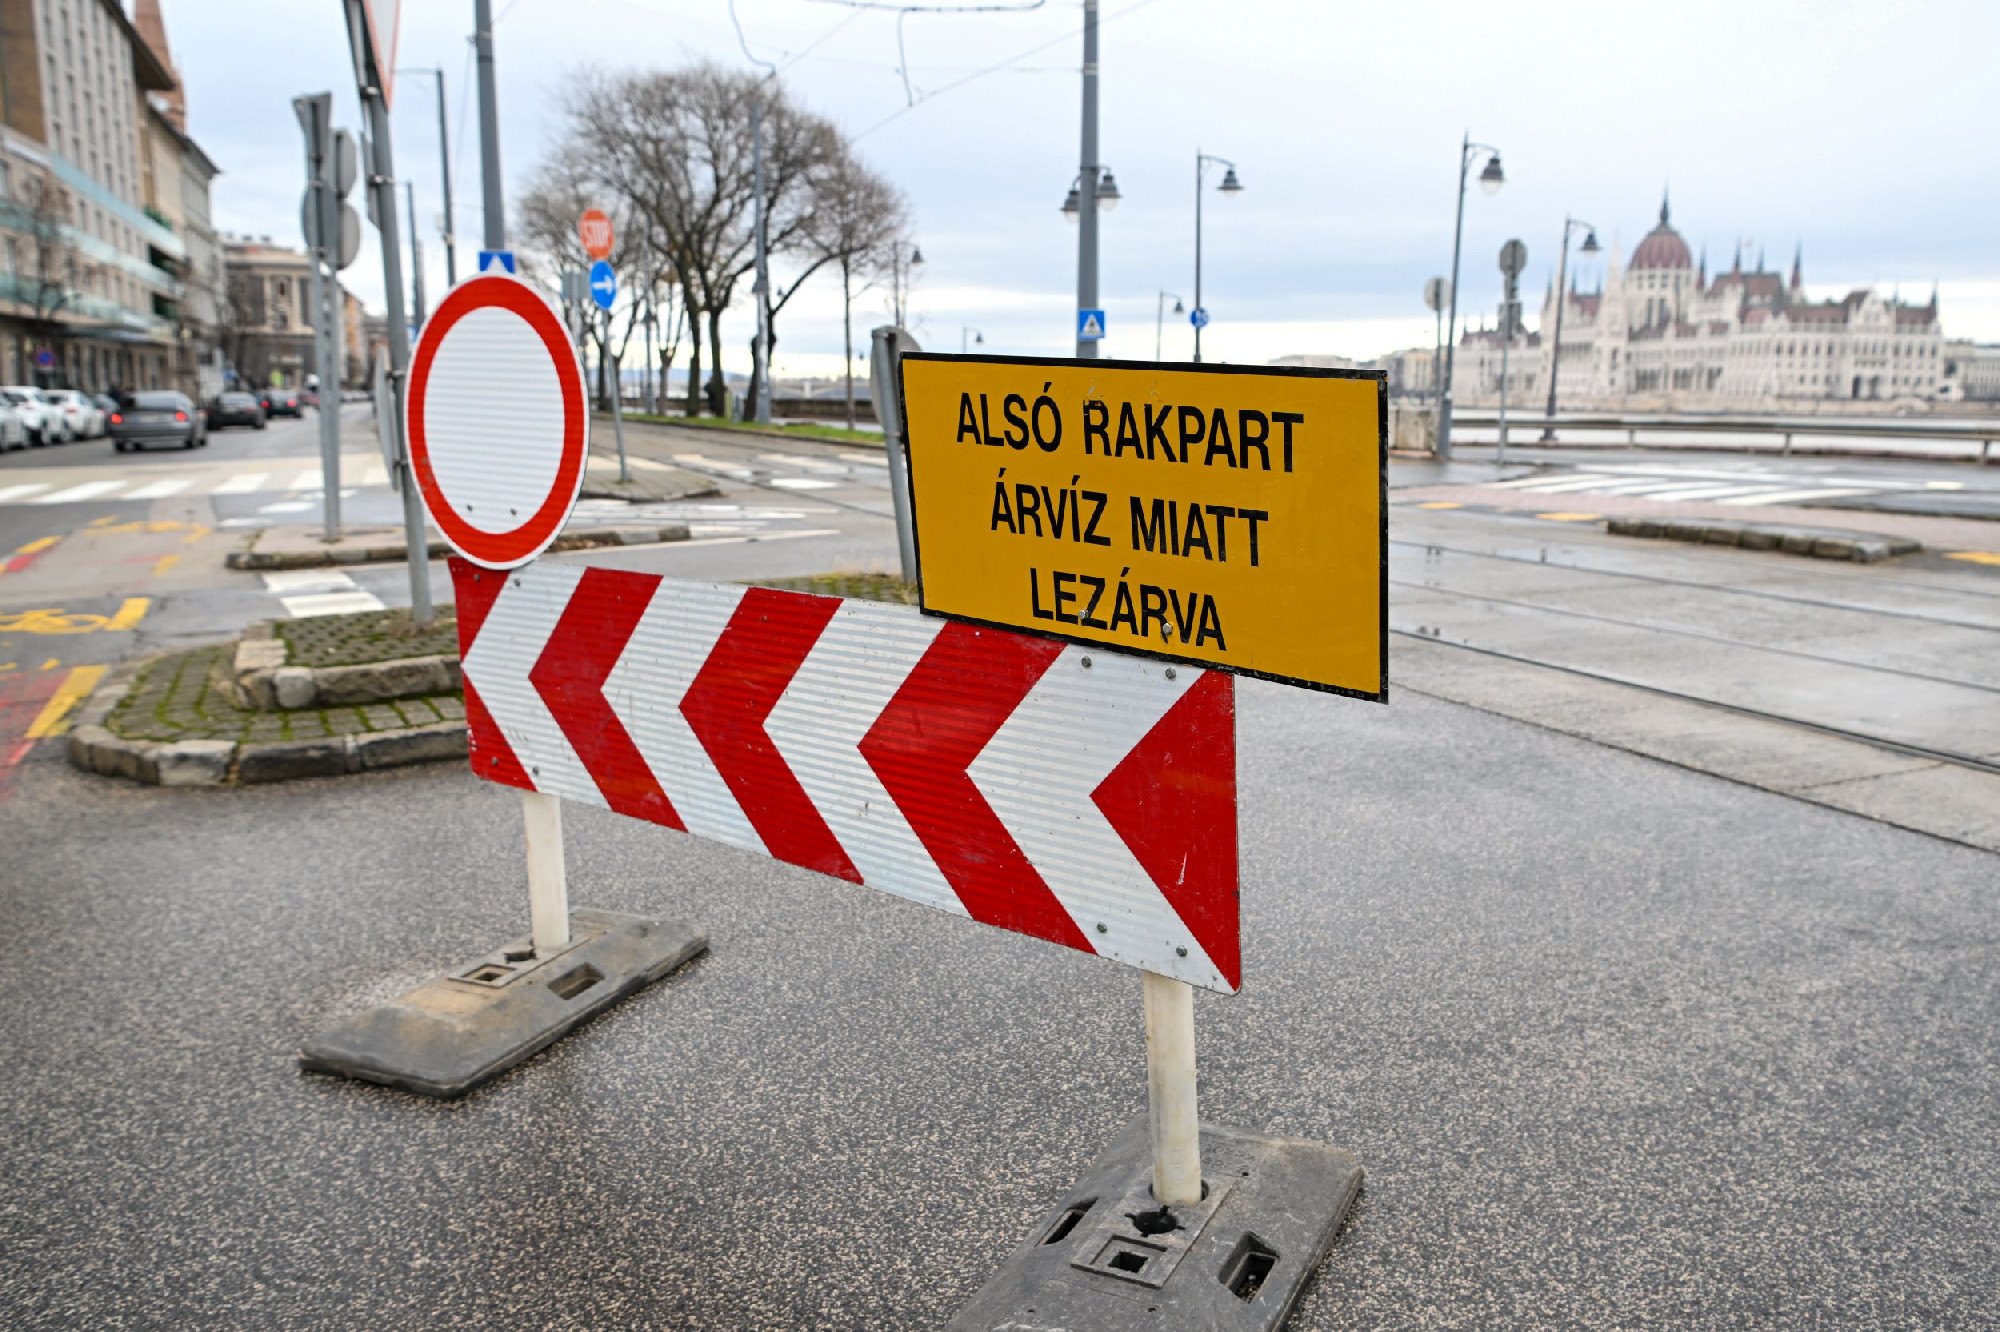 Megkezdték az alsó rakpartokon hagyott járművek elszállítását Budapesten